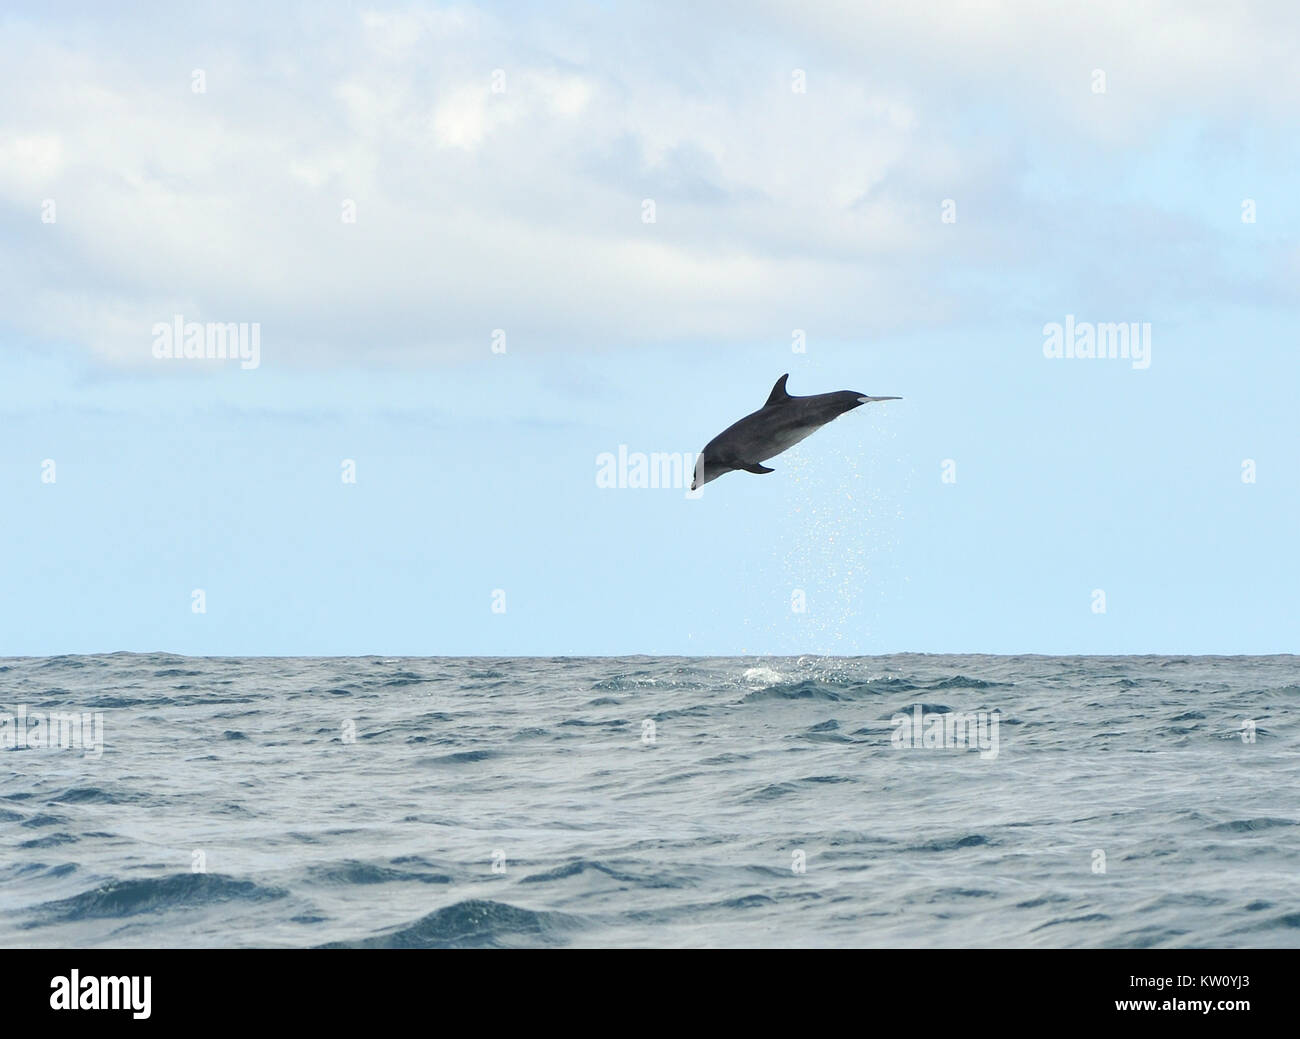 A common bottlenose dolphin (Tursiops truncatus) leaps into the air, showering water. Puerto Baquerizo Moreno, San Cristobal, Galapagos, Ecuador. Stock Photo